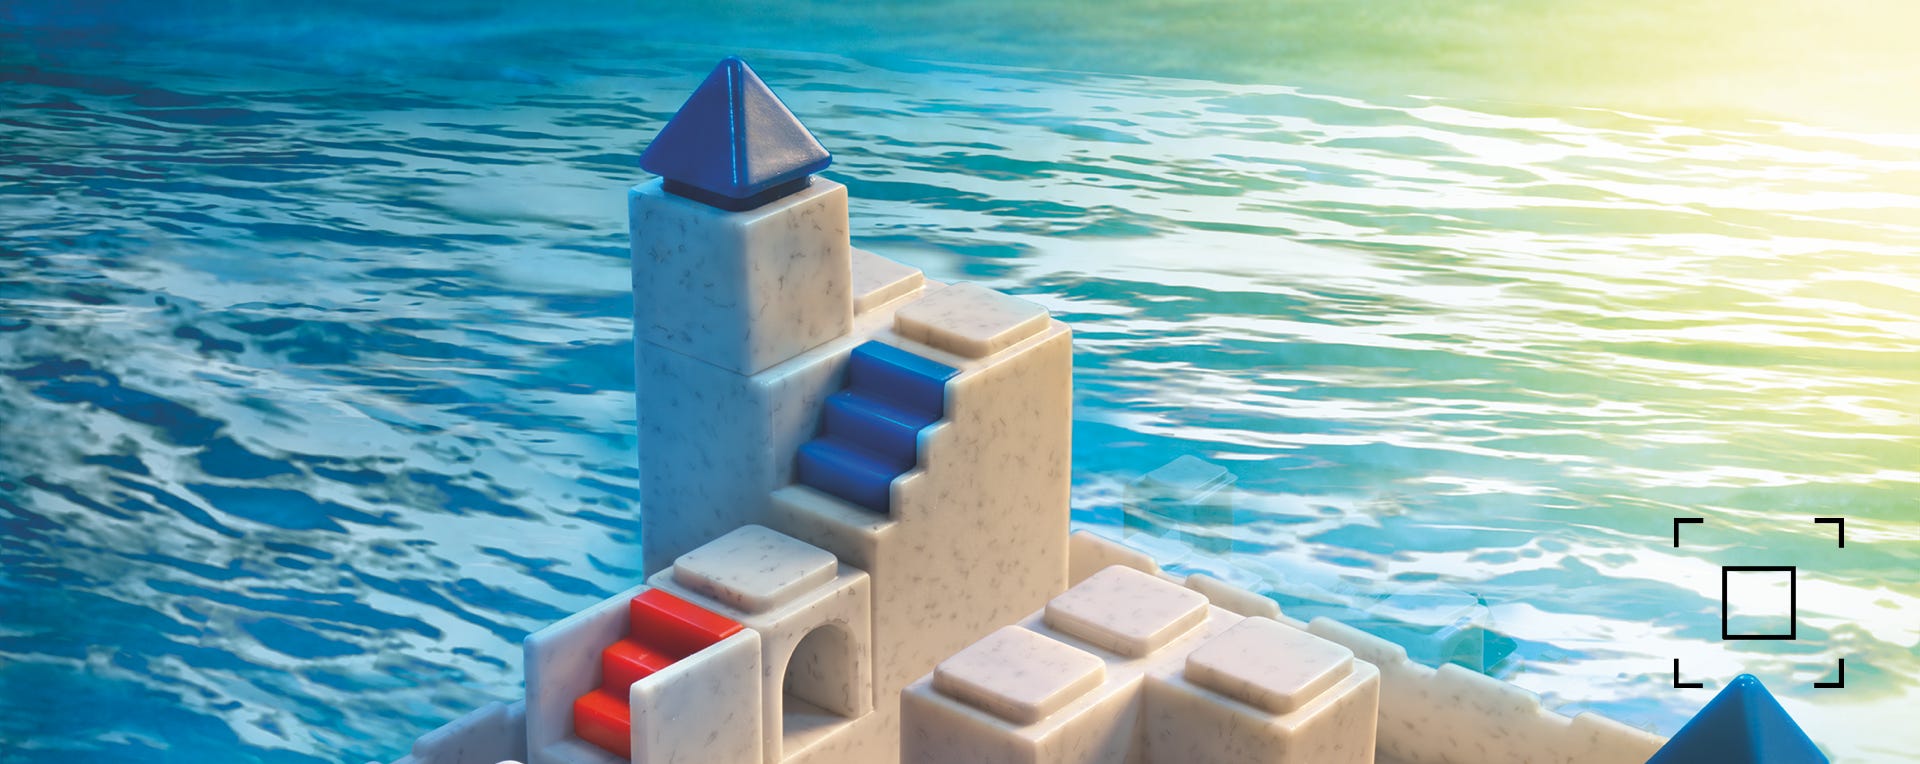 Atlantis Escape, a compact 3D puzzle game with 60 challenges